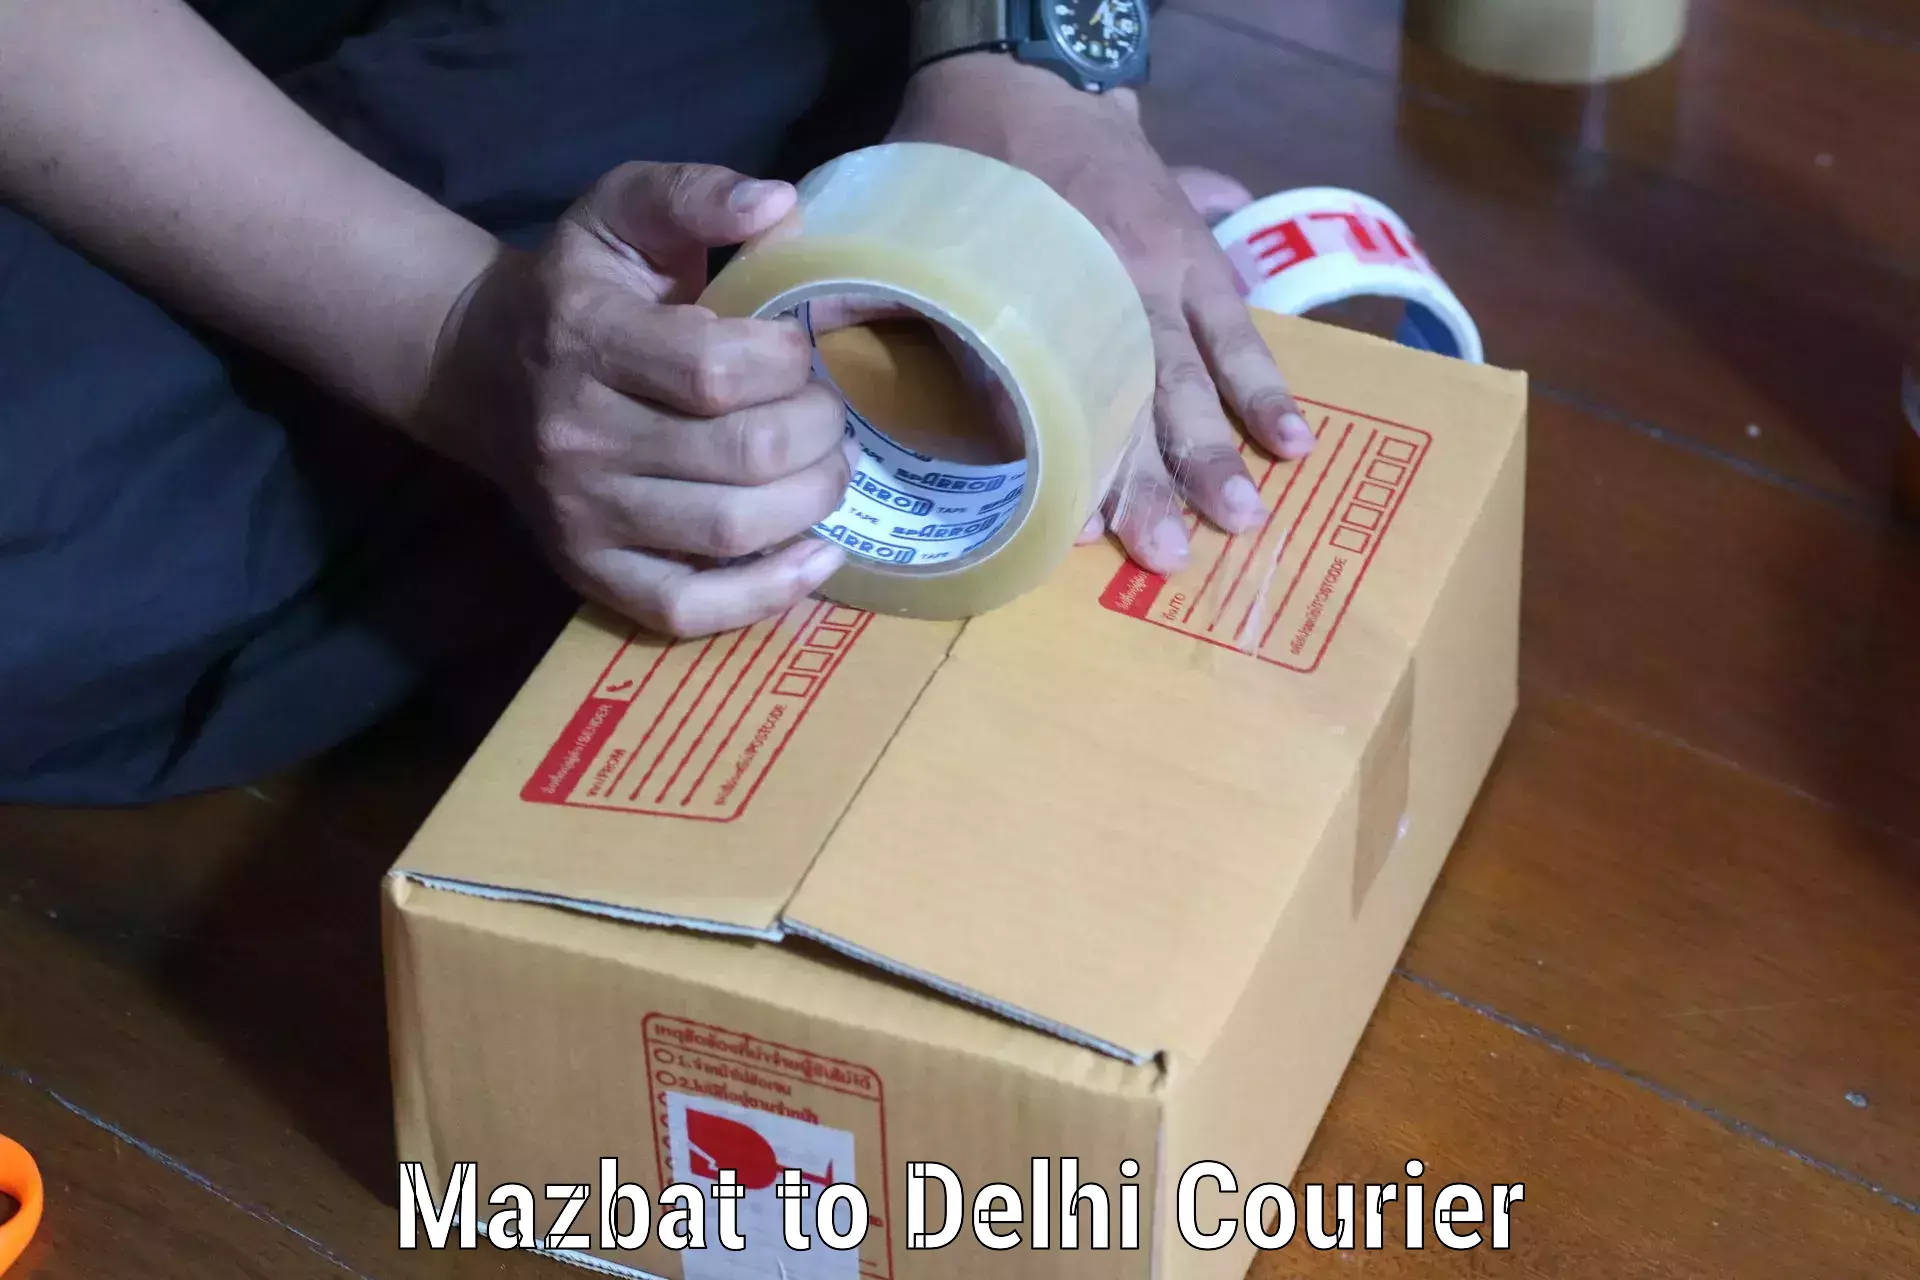 Global logistics network Mazbat to Delhi